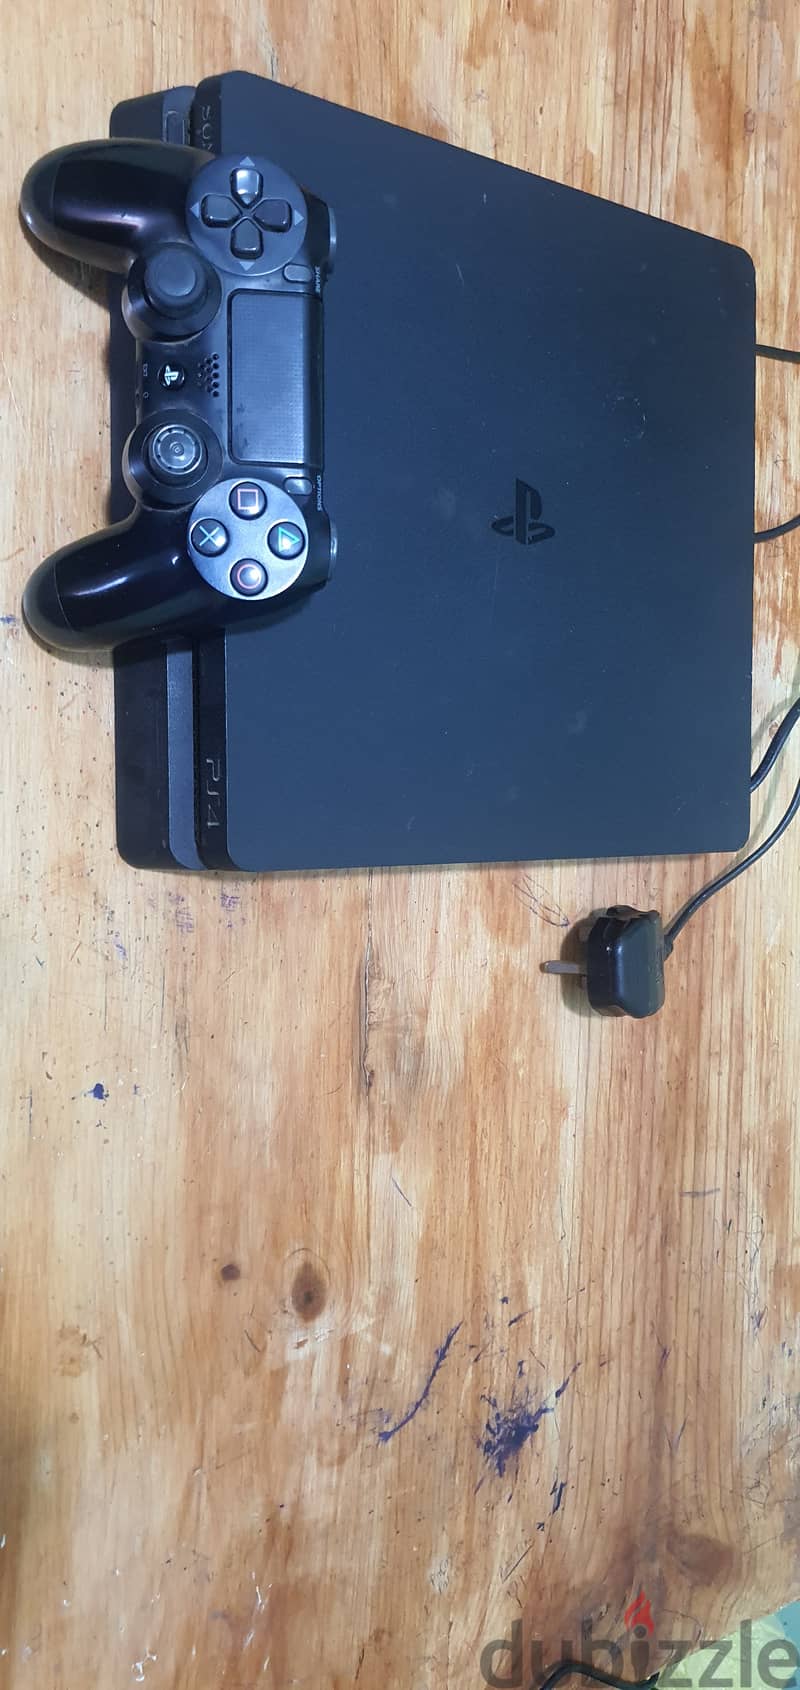 PlayStation 4 مع دراع أصلي 1